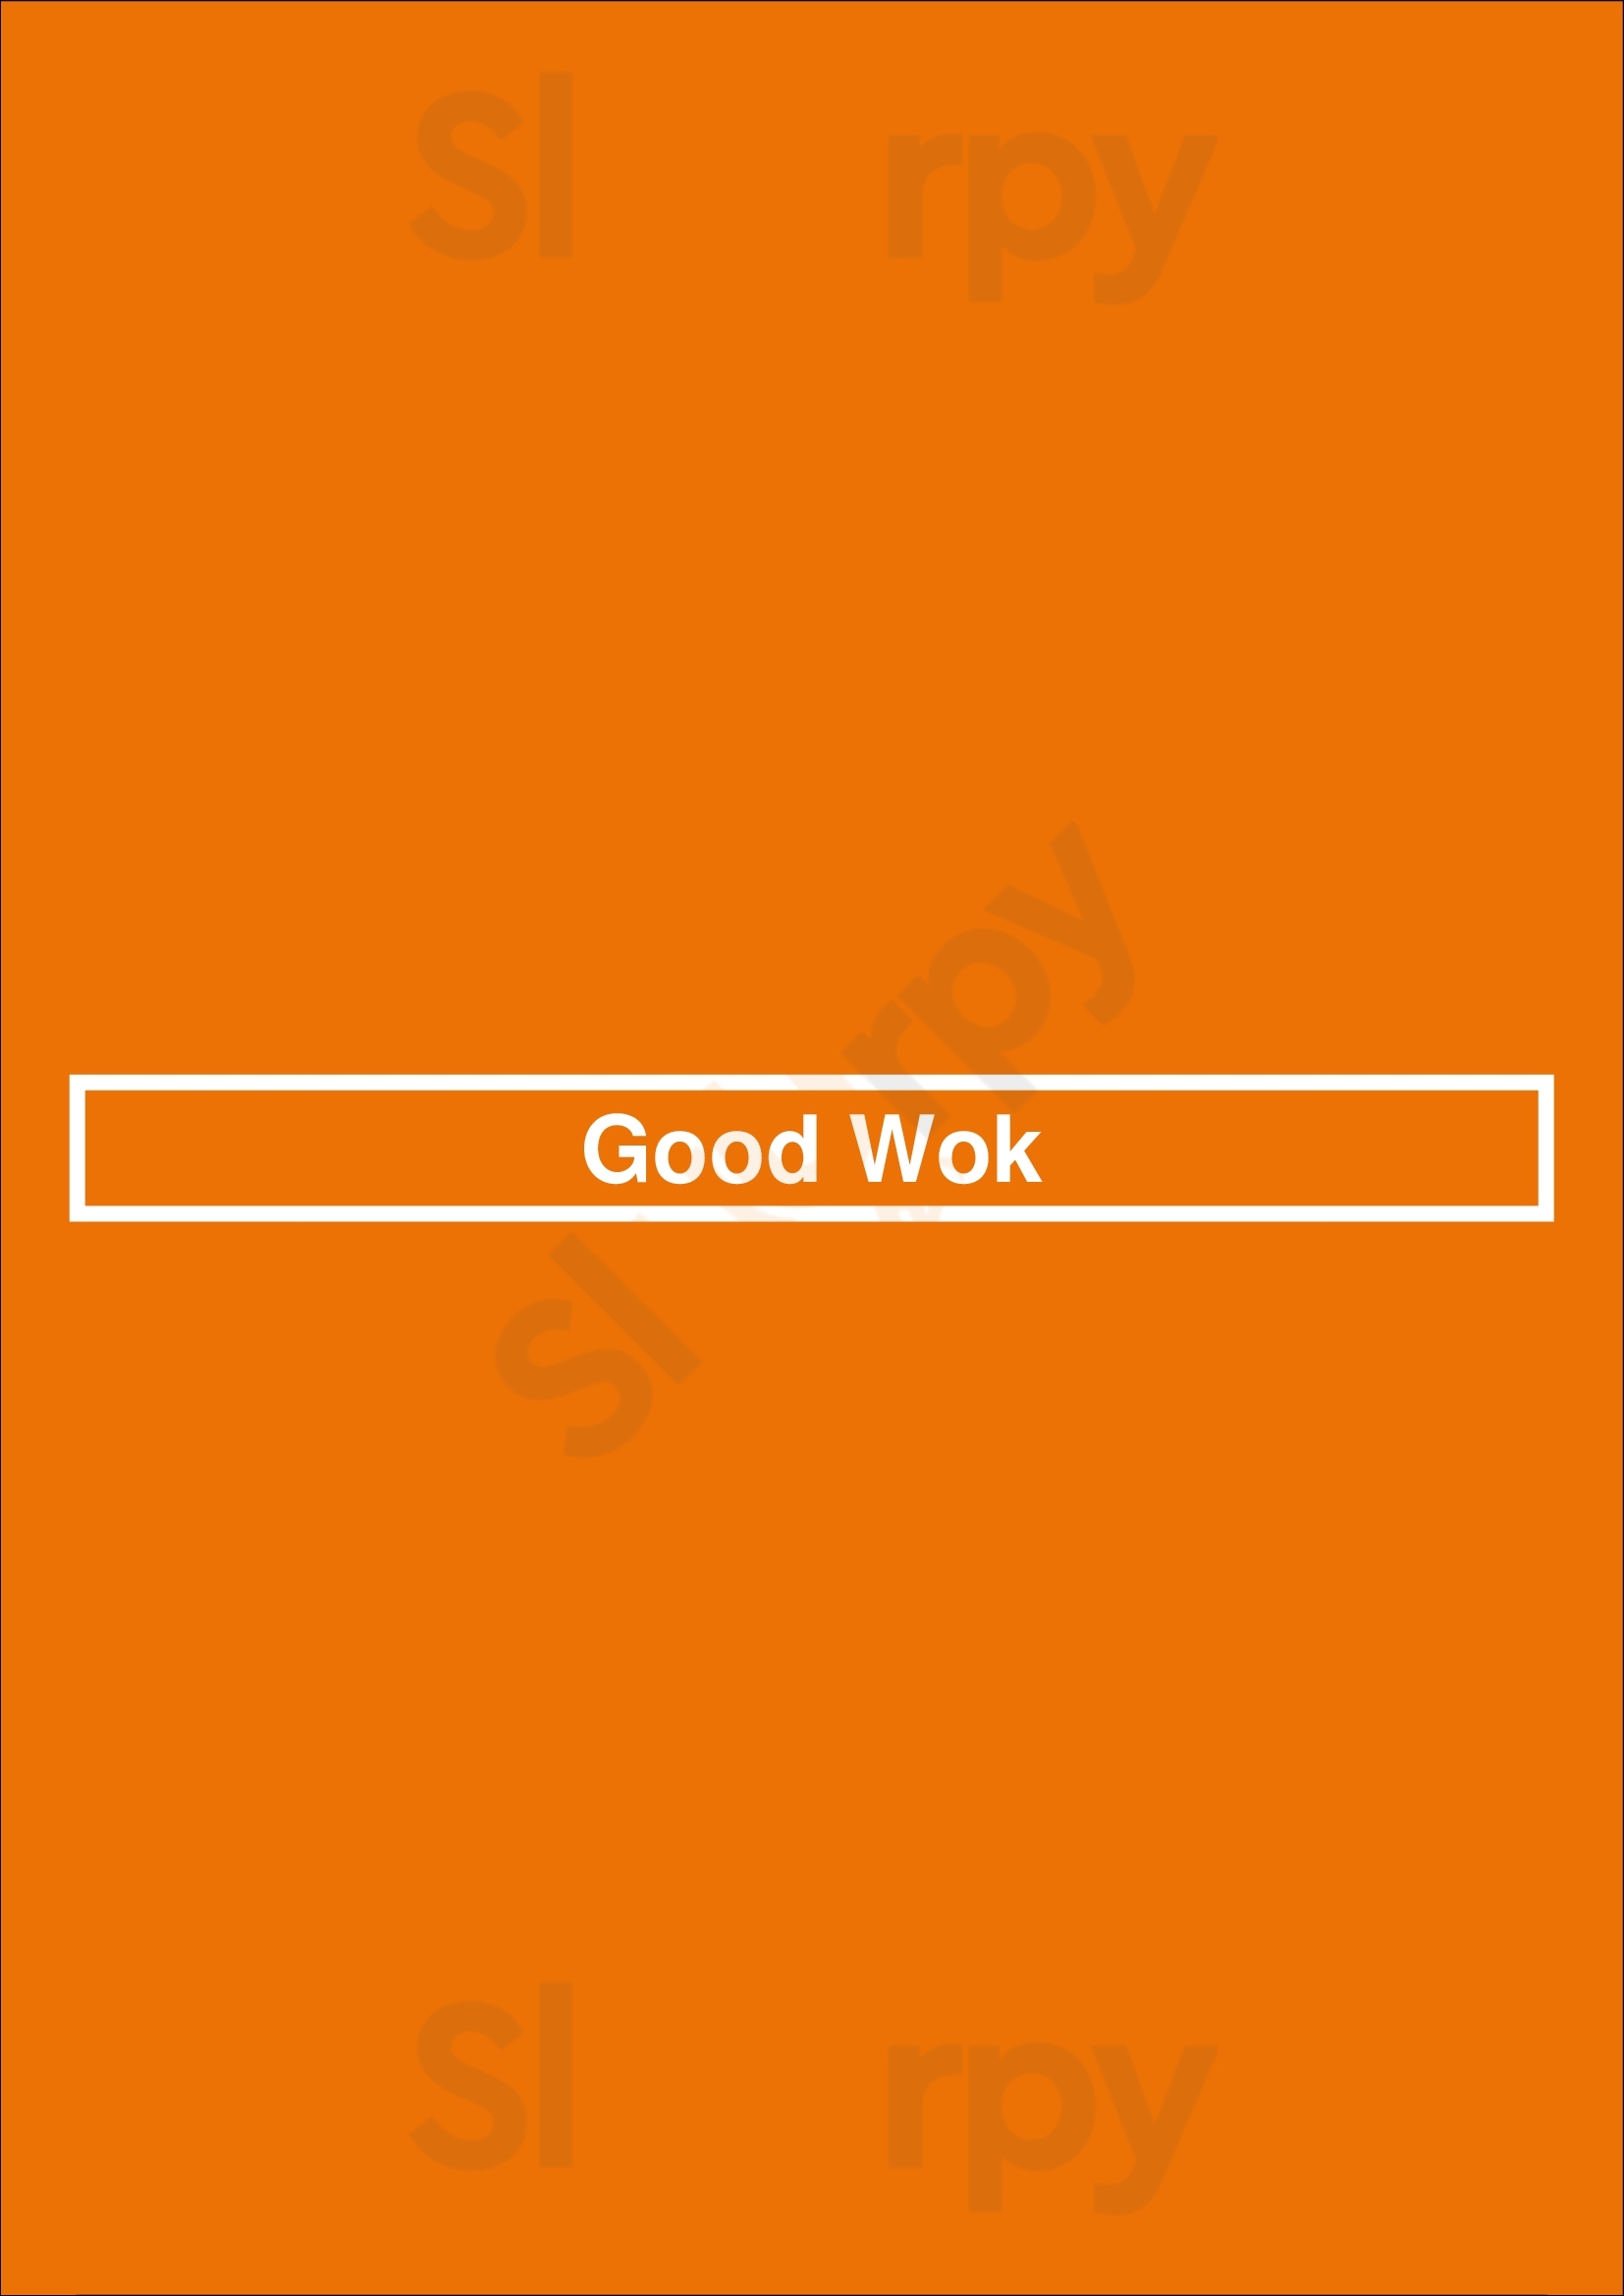 Good Wok Gloucester Menu - 1